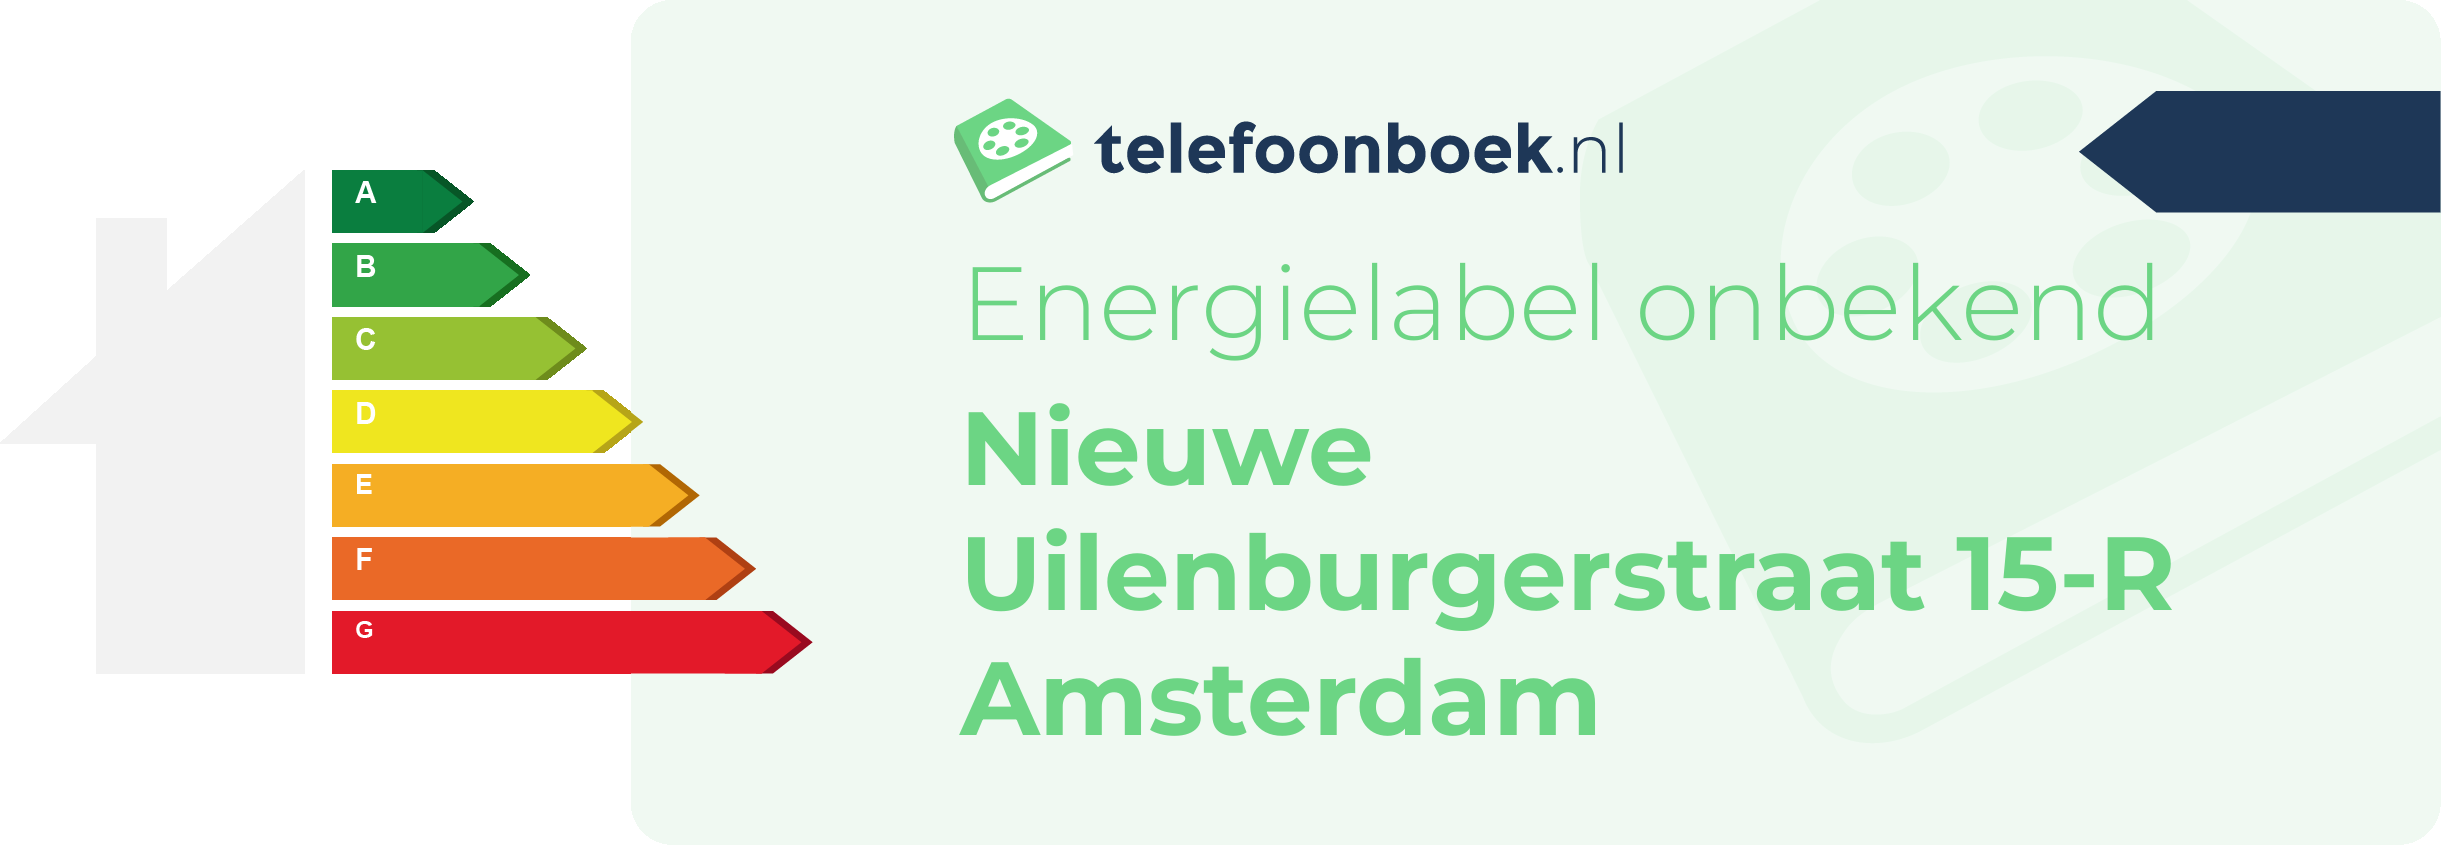 Energielabel Nieuwe Uilenburgerstraat 15-R Amsterdam